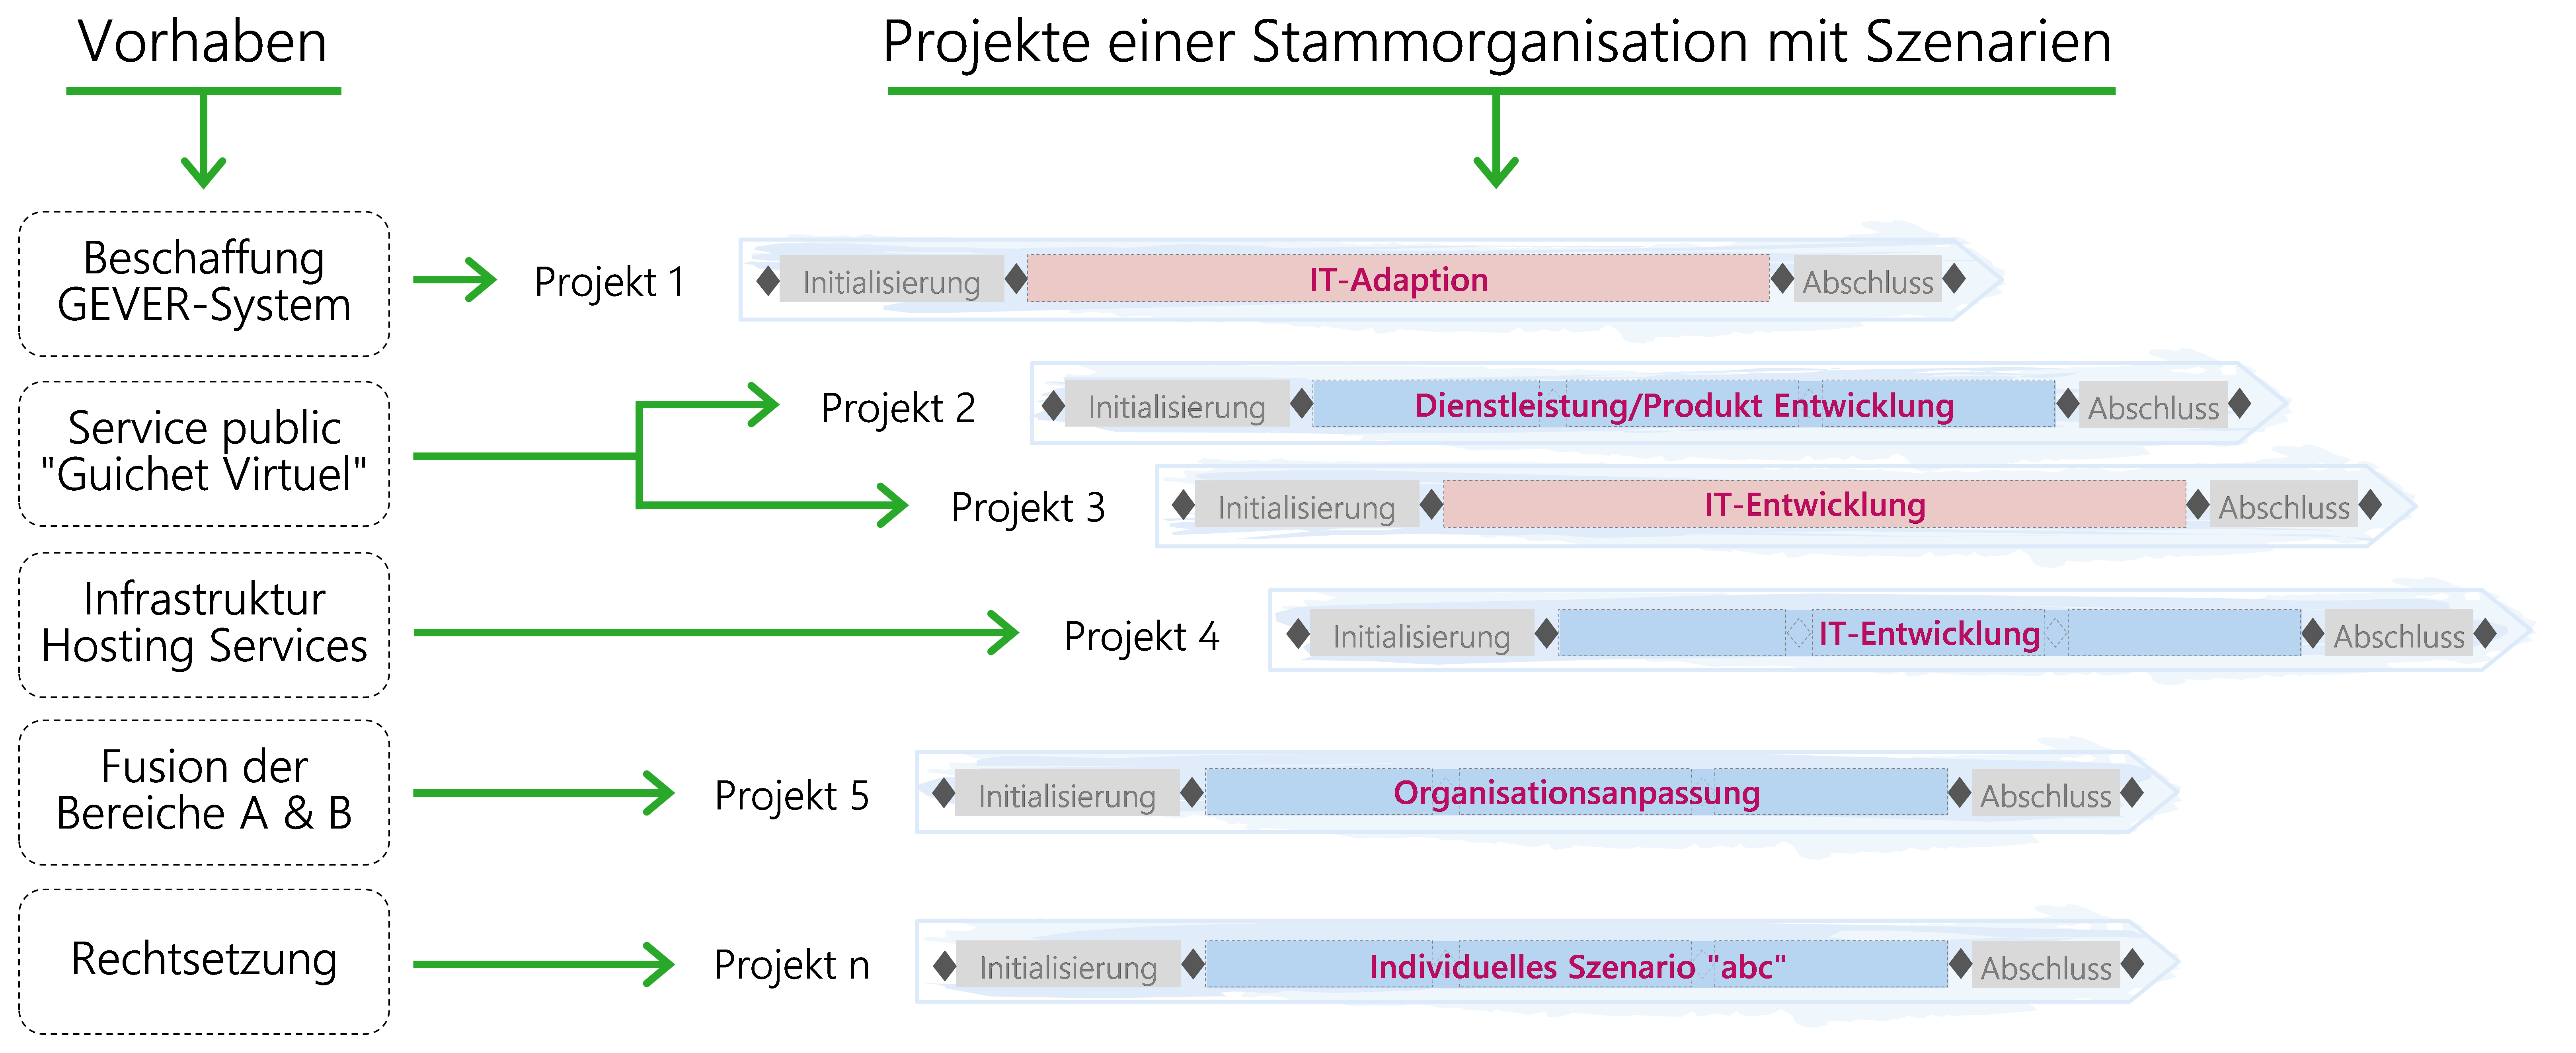 Abbildung 6: Projekte einer Stammorganisation mit Szenarien